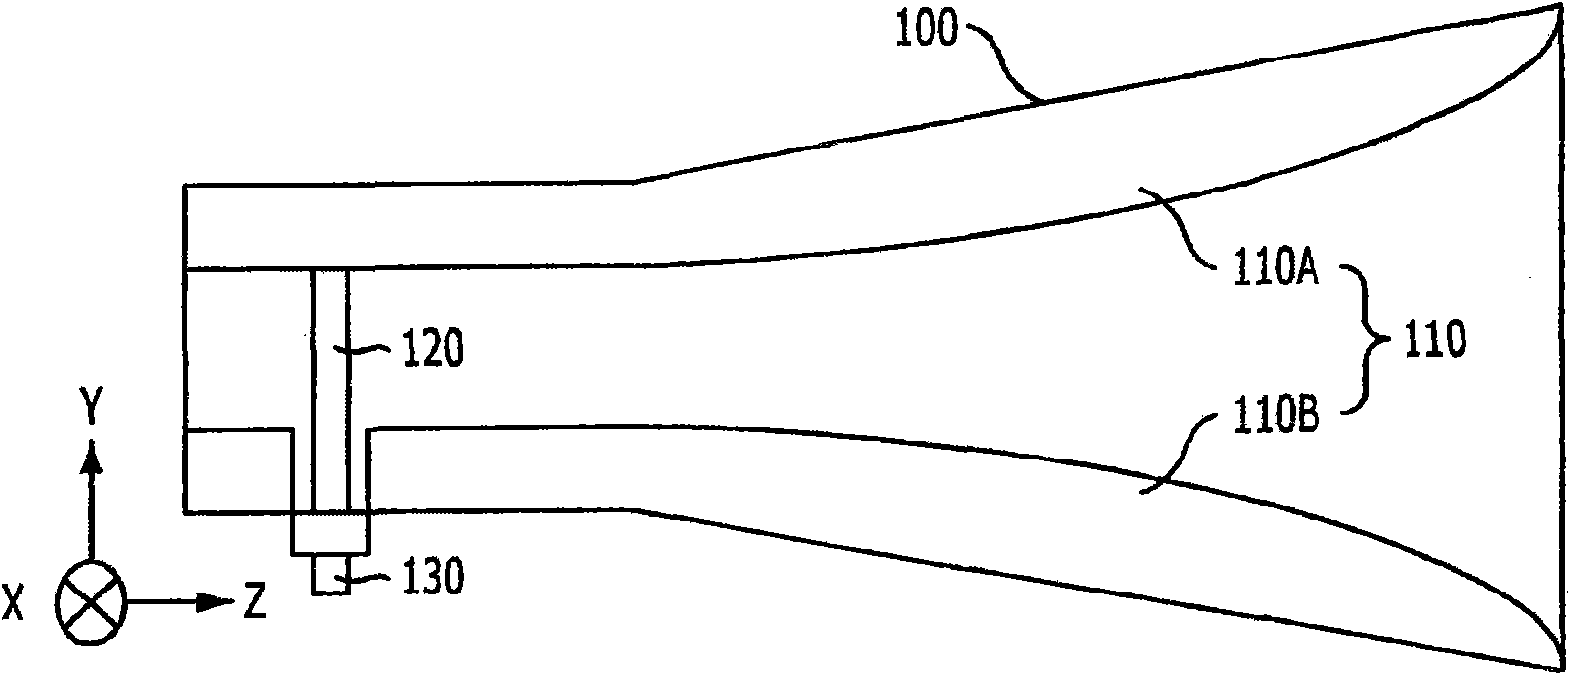 Double-ridged horn antenna having higher-order mode suppressor